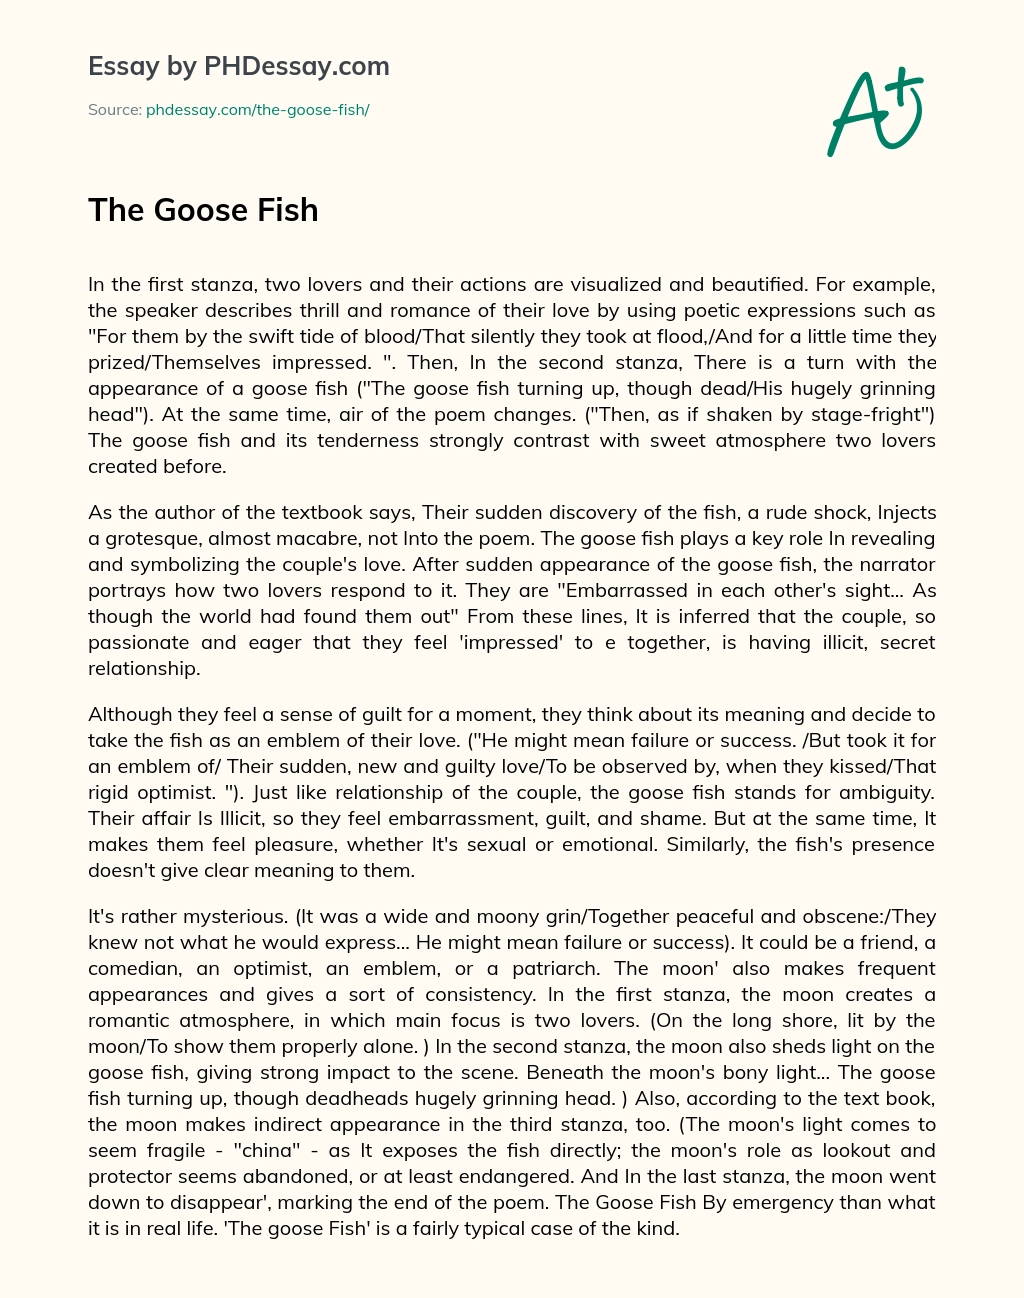 The Goose Fish essay